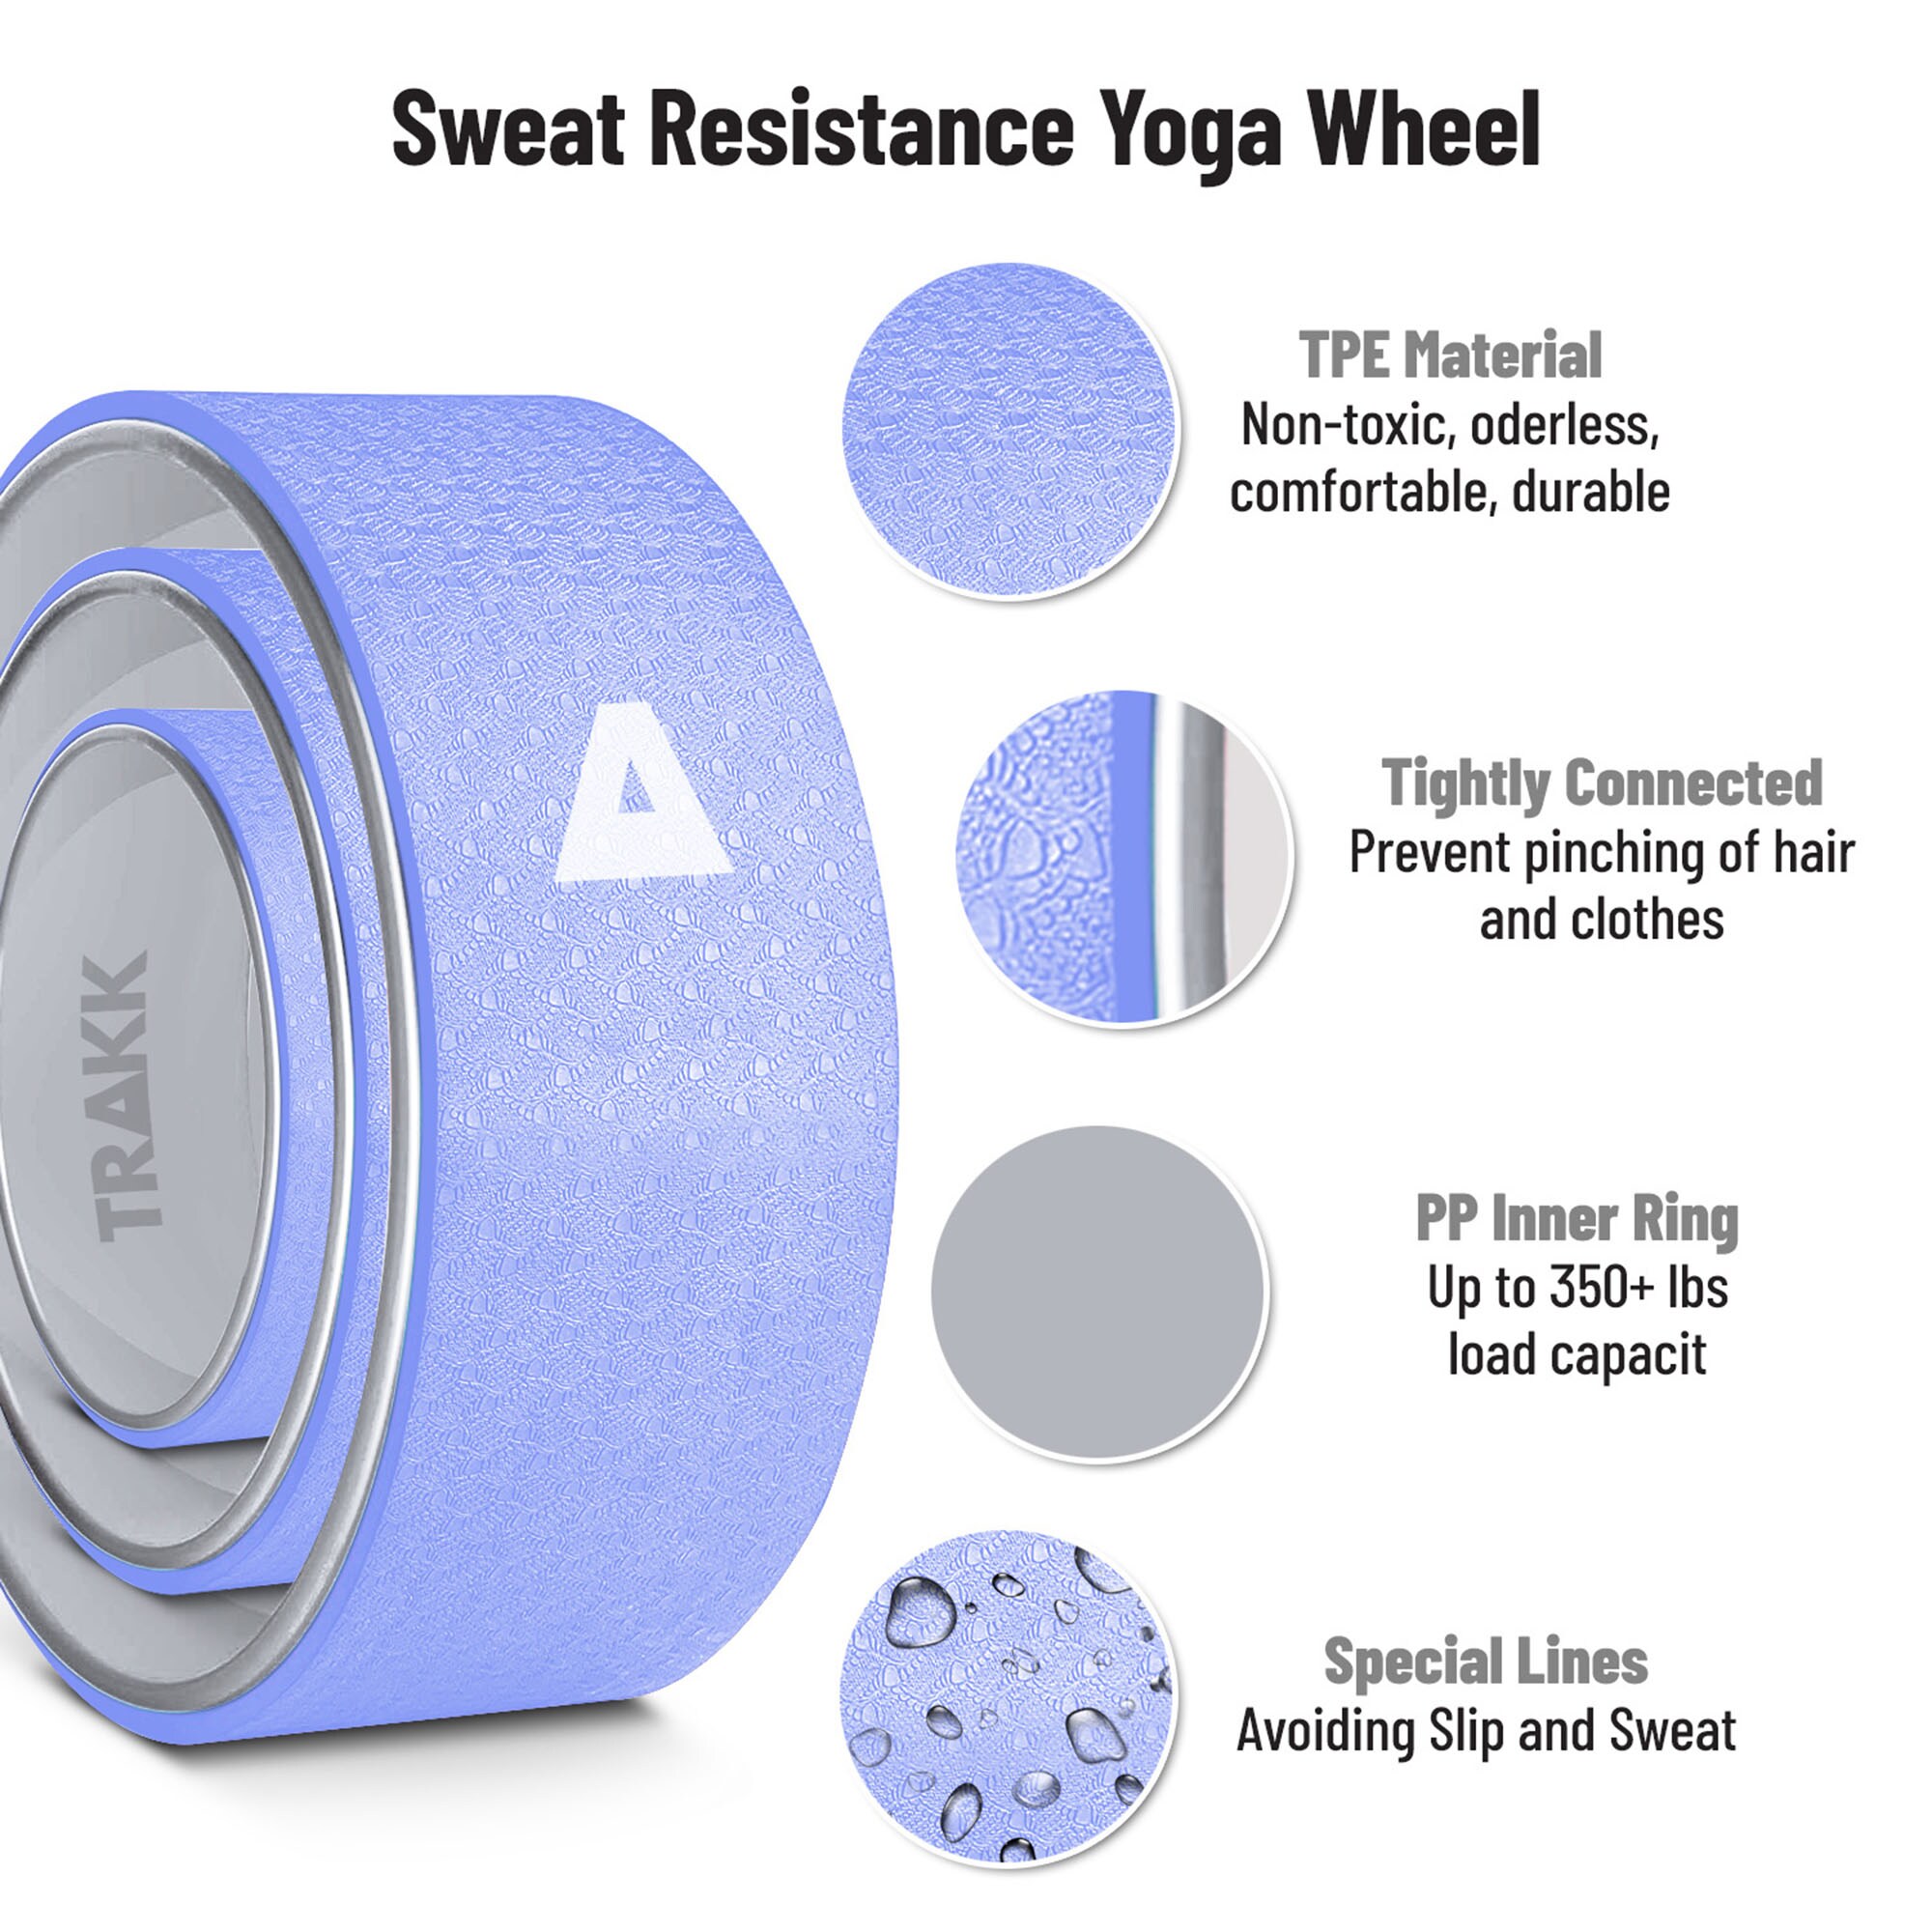  Yoga Roue 33 cm   Idéal pour Pilates et Yoga  MEGLIO Yoga Wheel  Balance  Muscles  dexercices de  pour lamélioration de la flexibilité Tension Exercices de Yoga